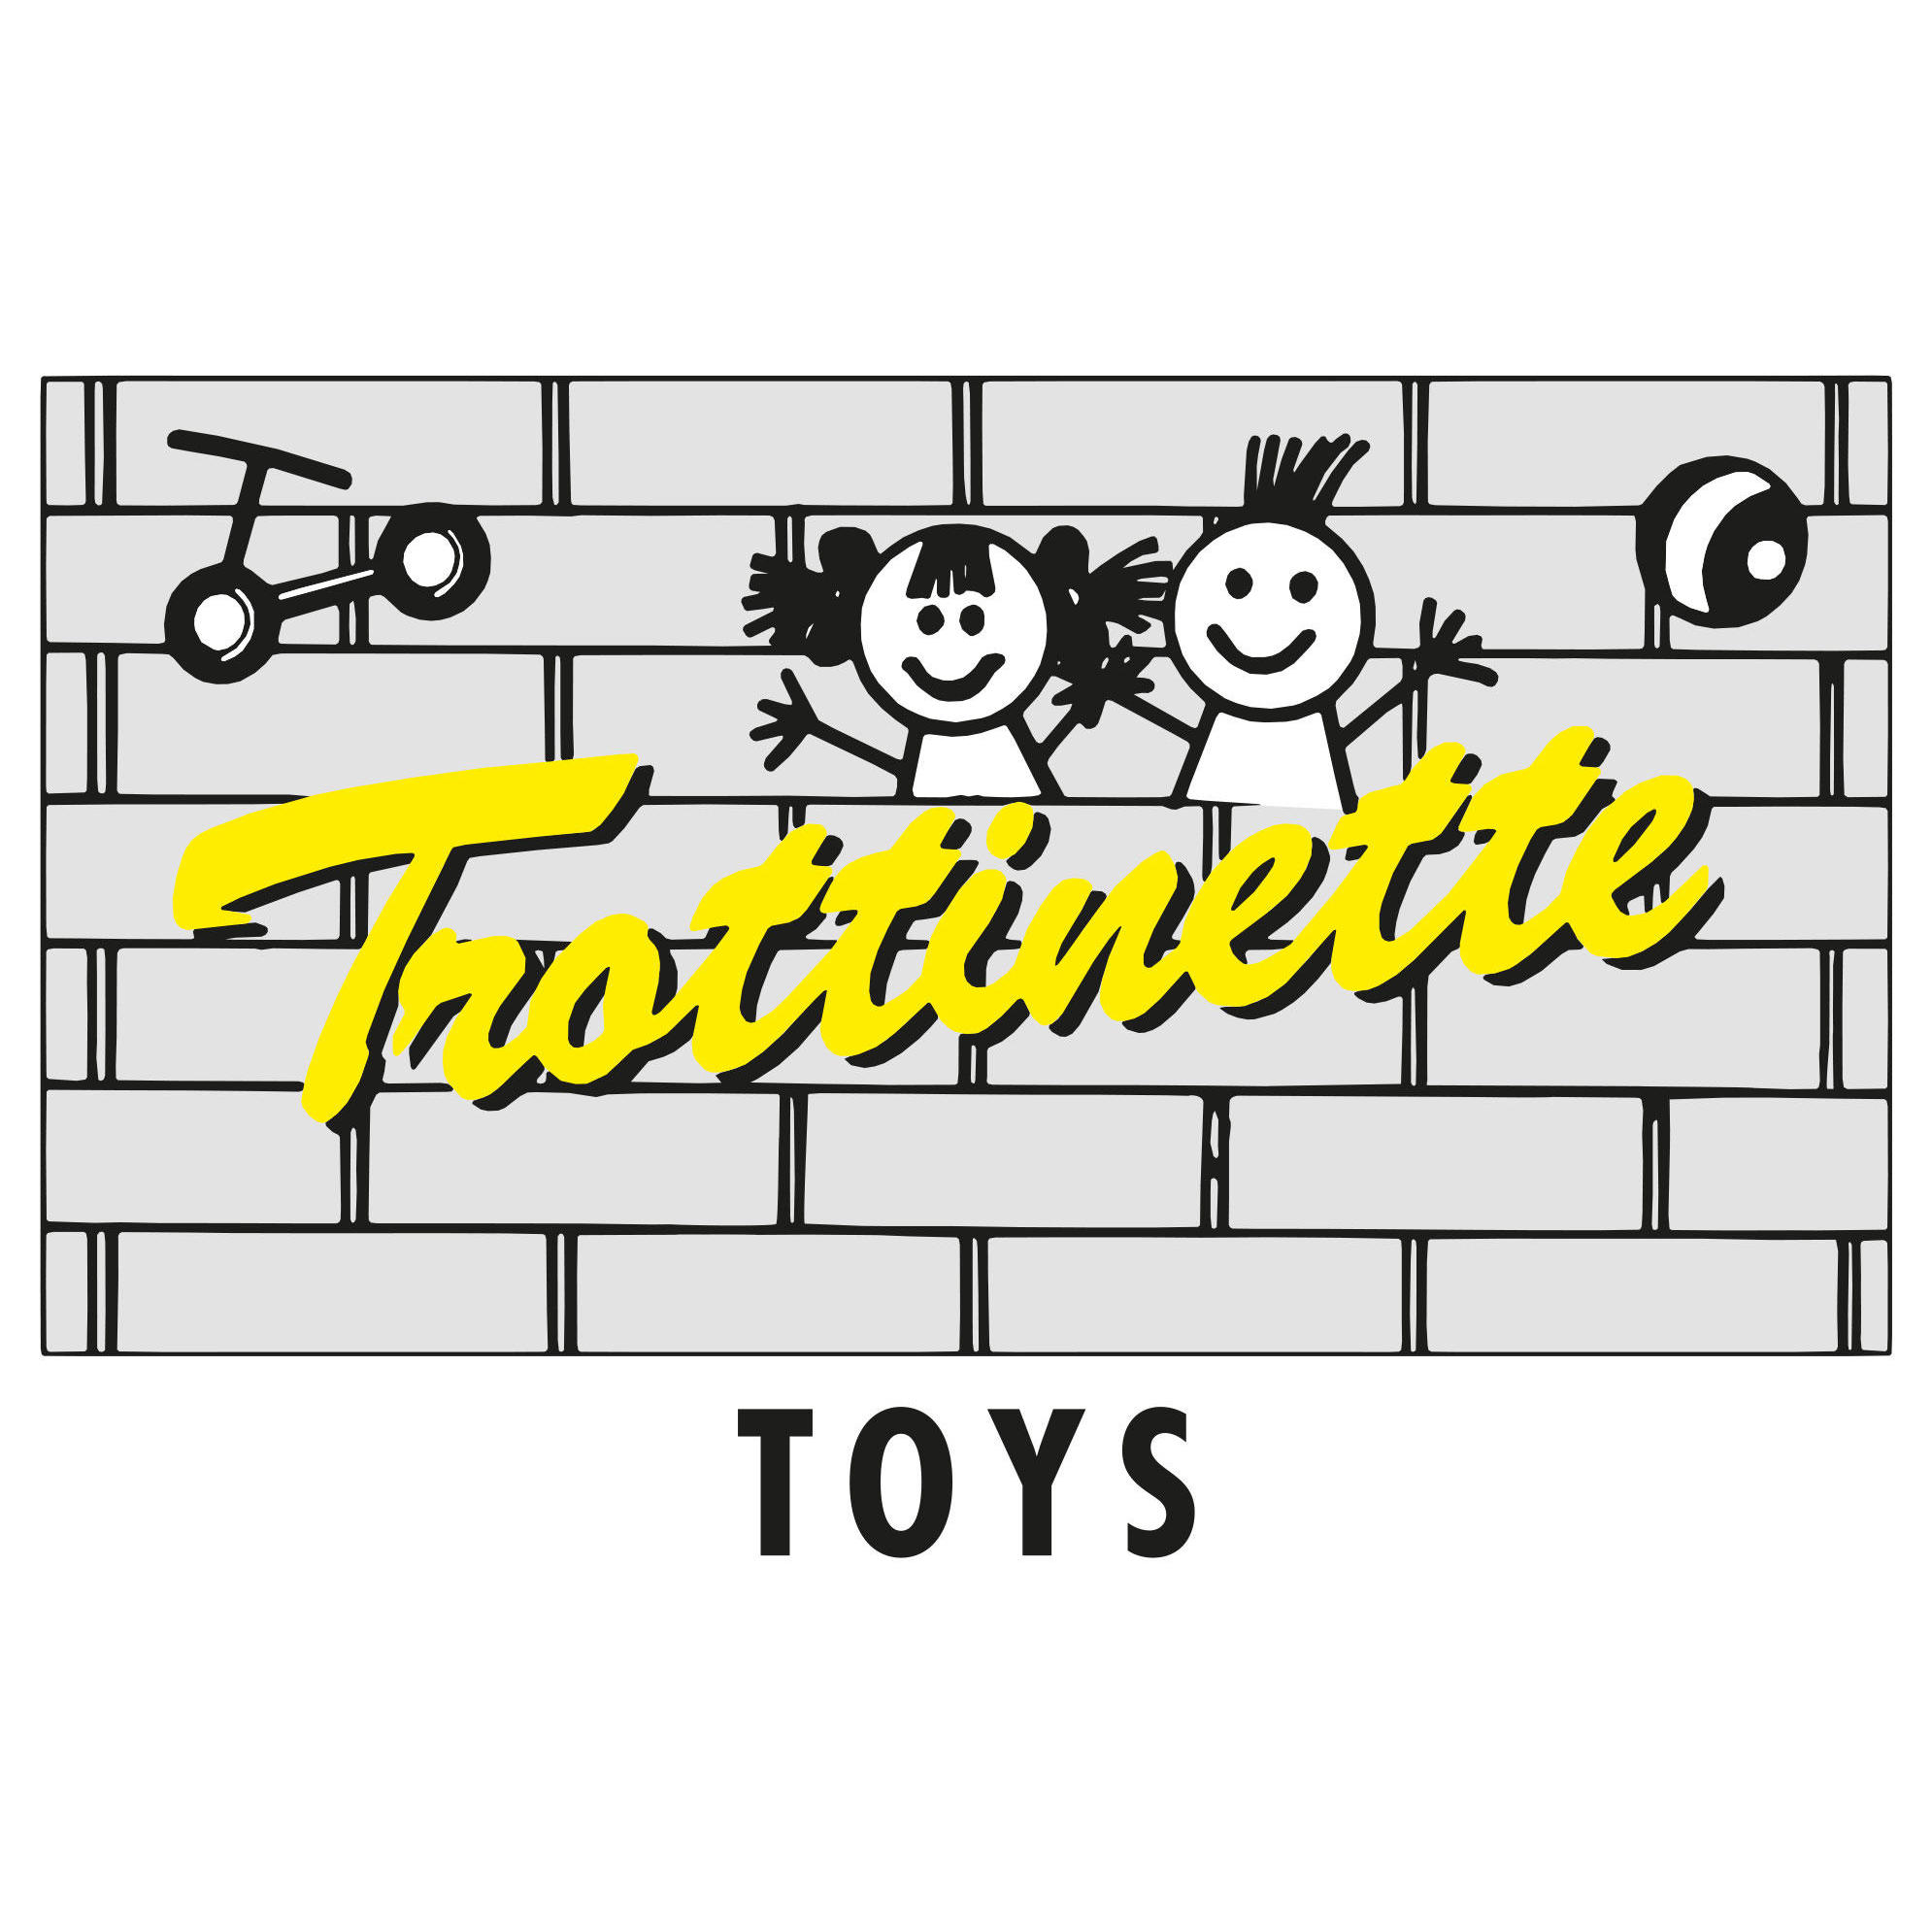 Trottinette Toys AG Logo